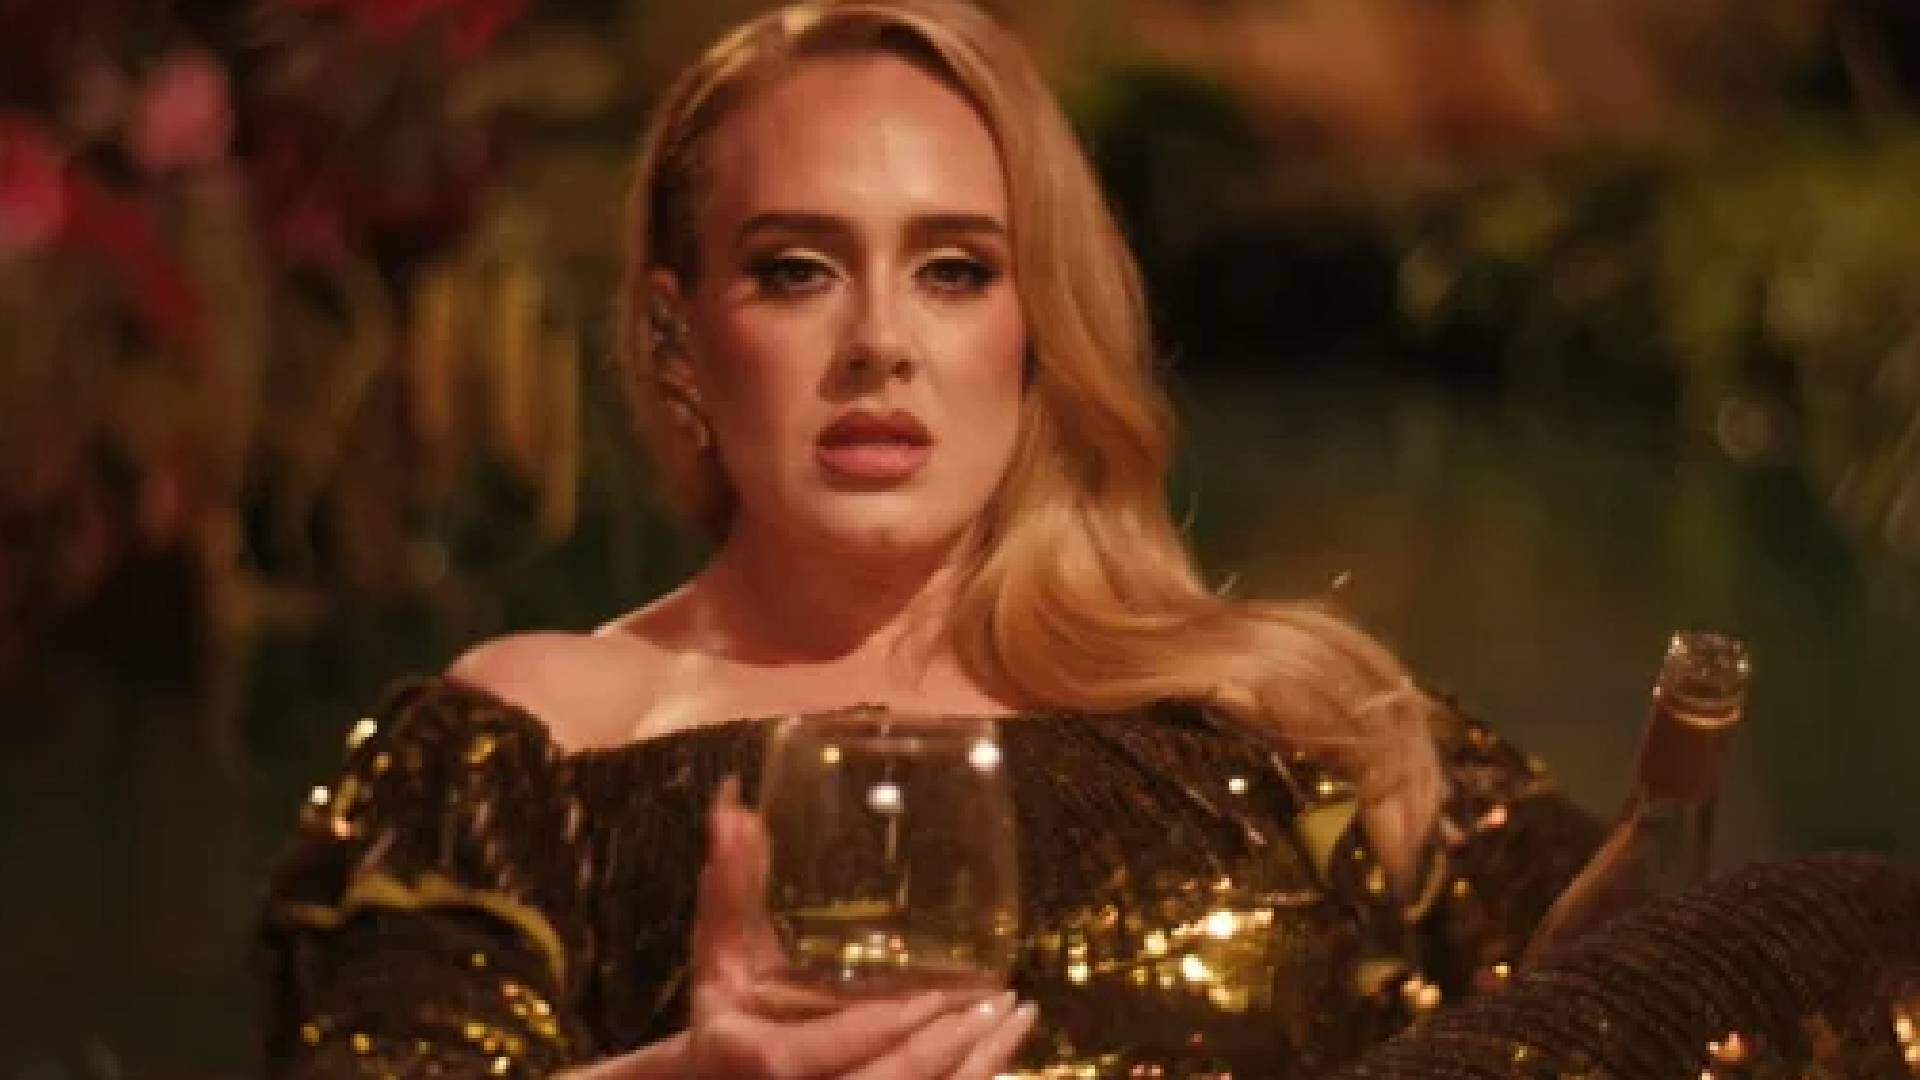 Clipe novo, turnê no Brasil e mais: Adele divulga novidades sobre sua carreira musical